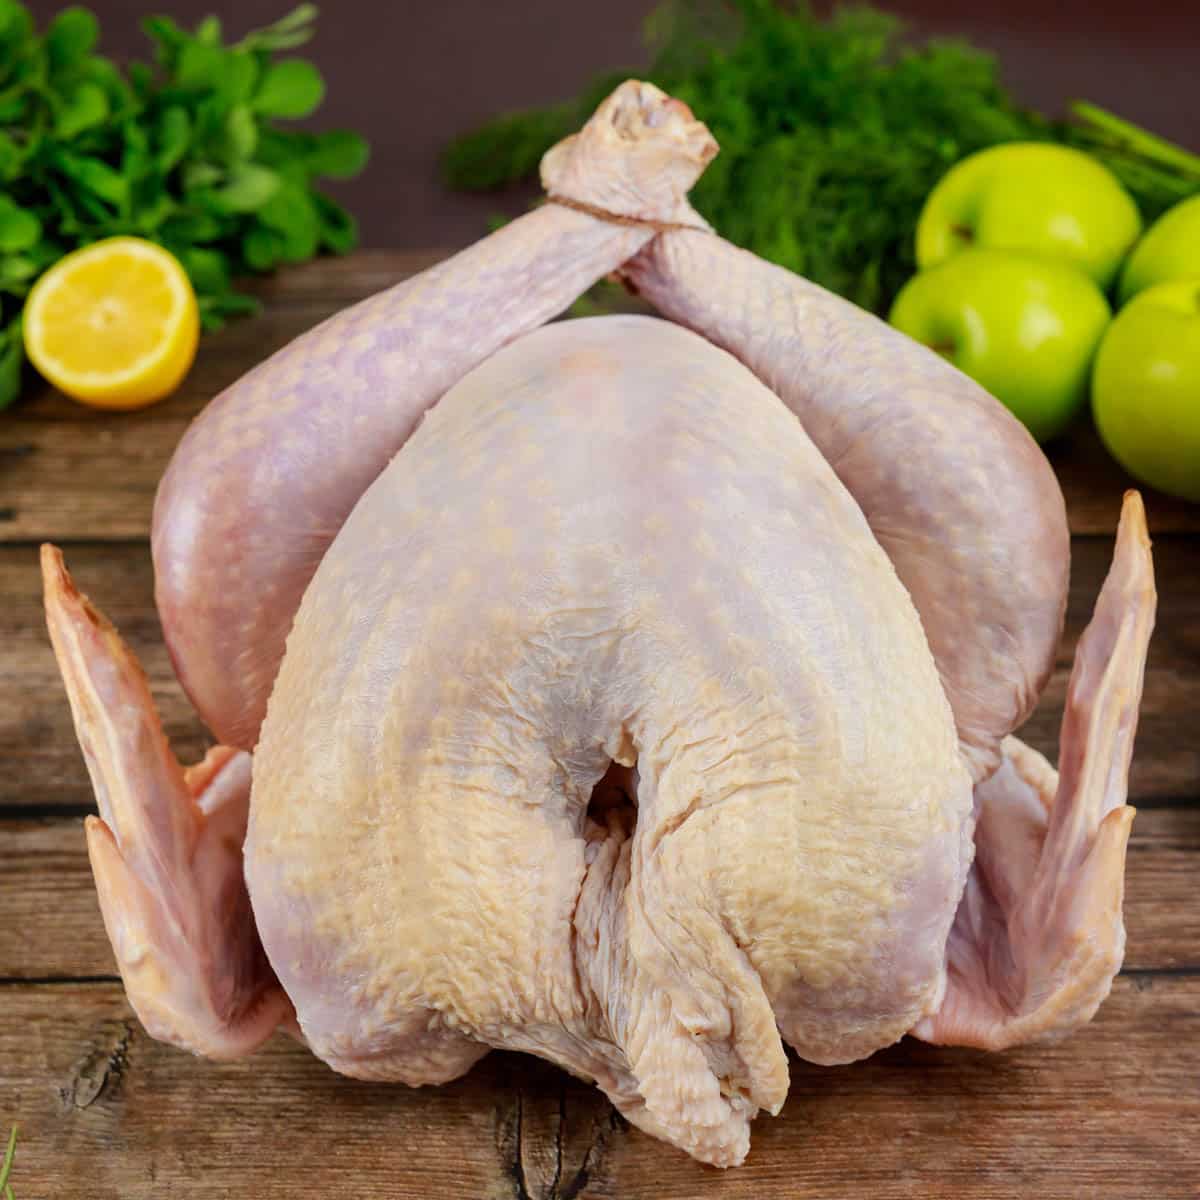 raw turkey on a cutting board